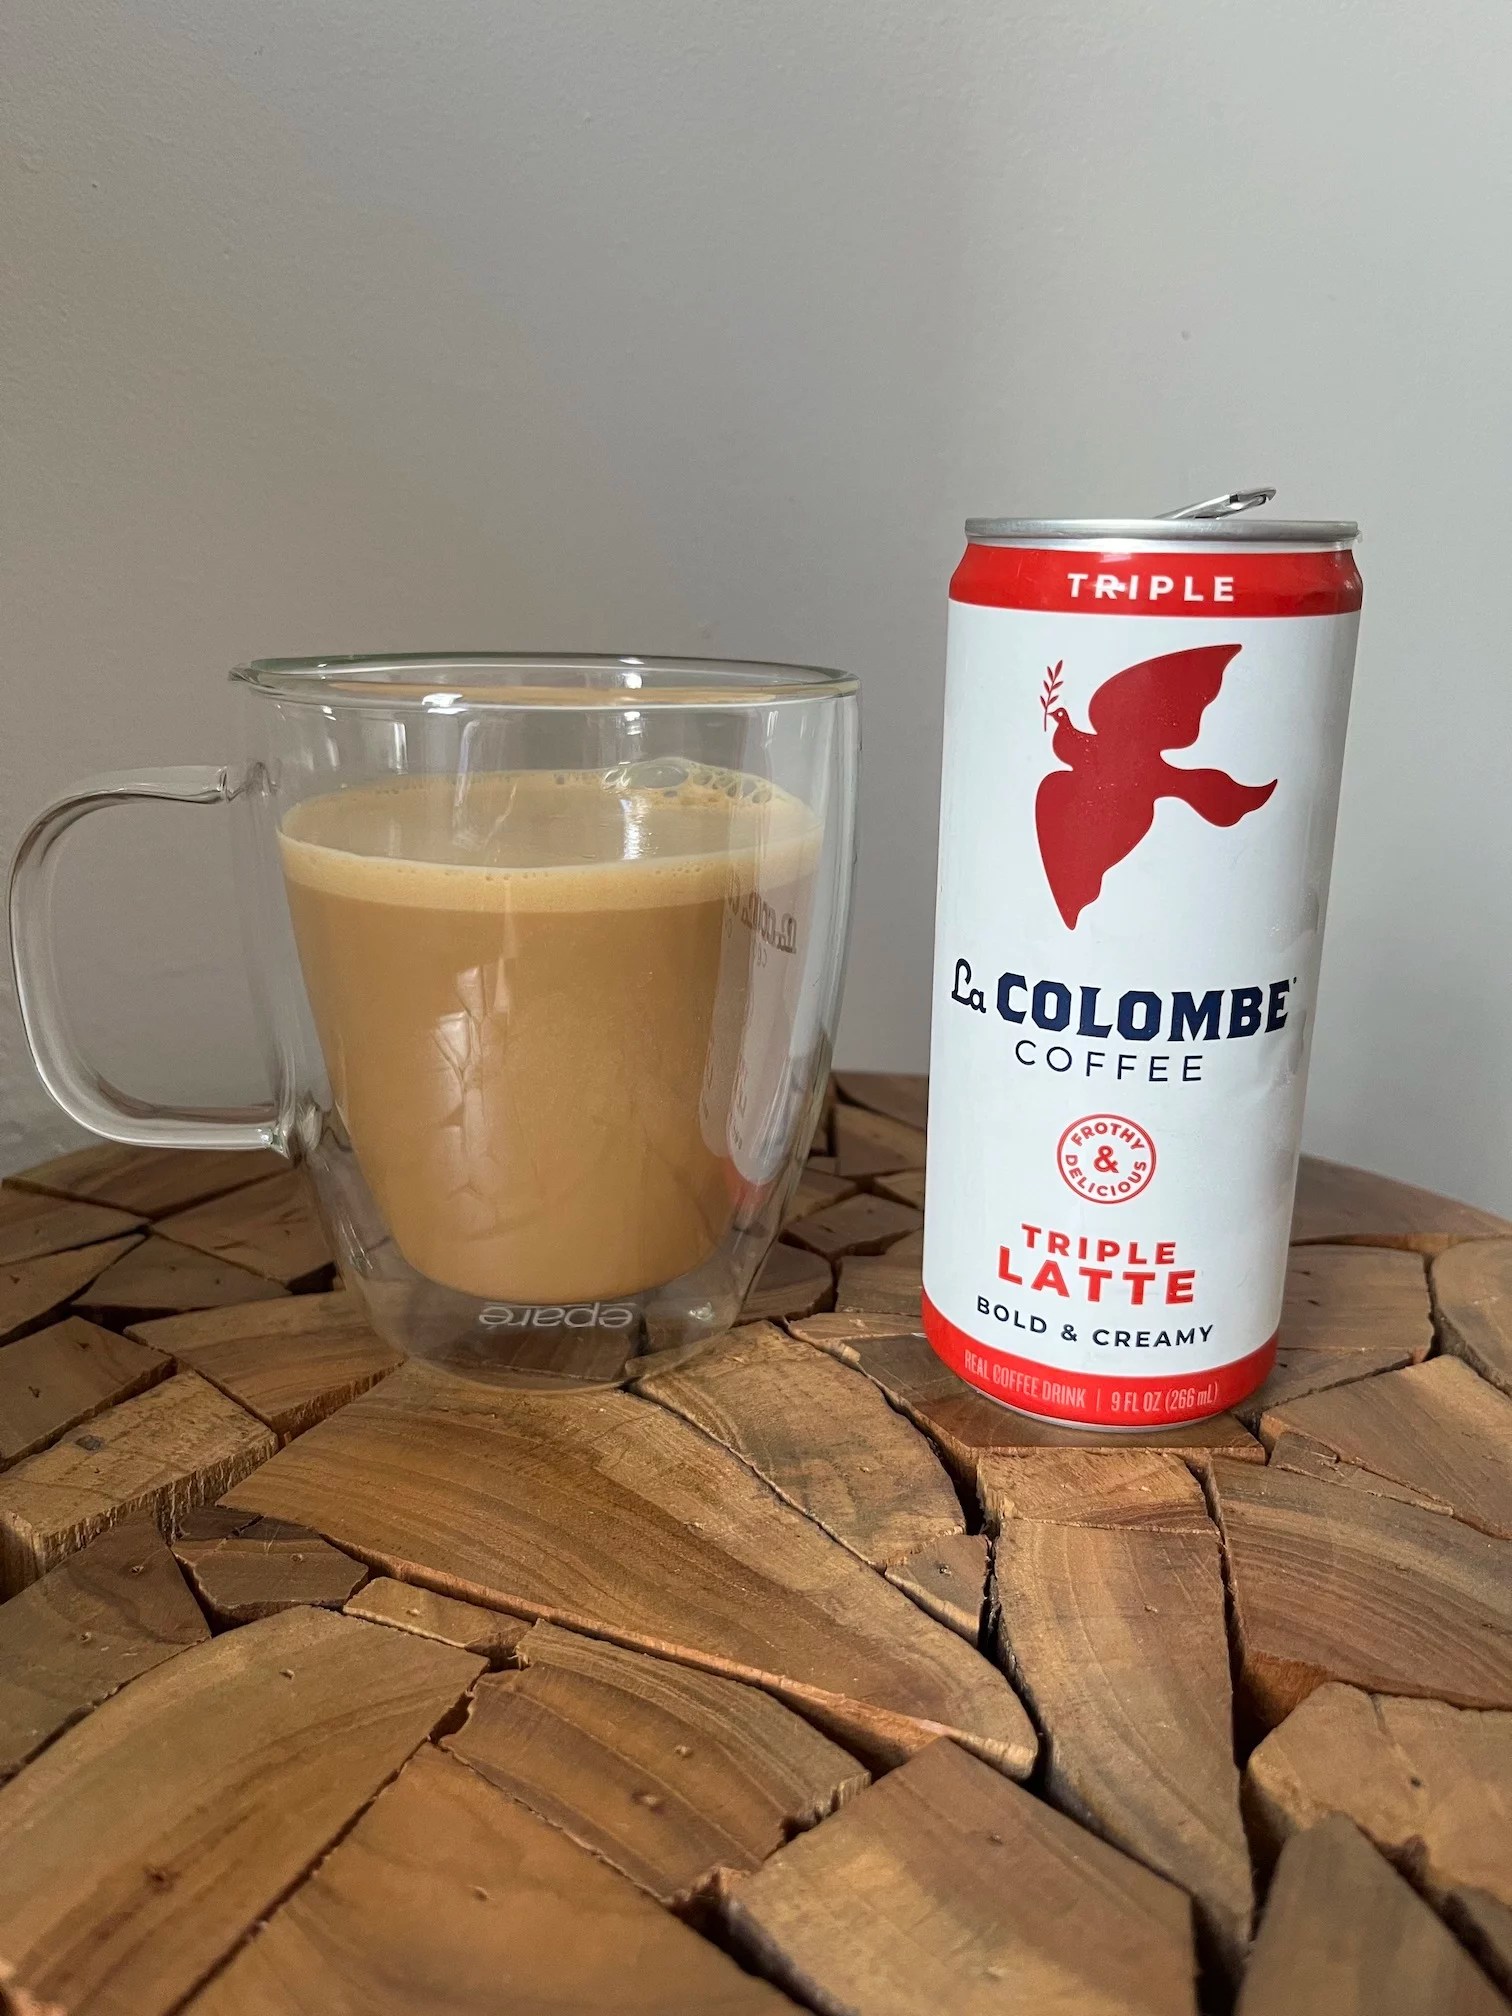 La Colombe: Triple Latte Bold and Creamy